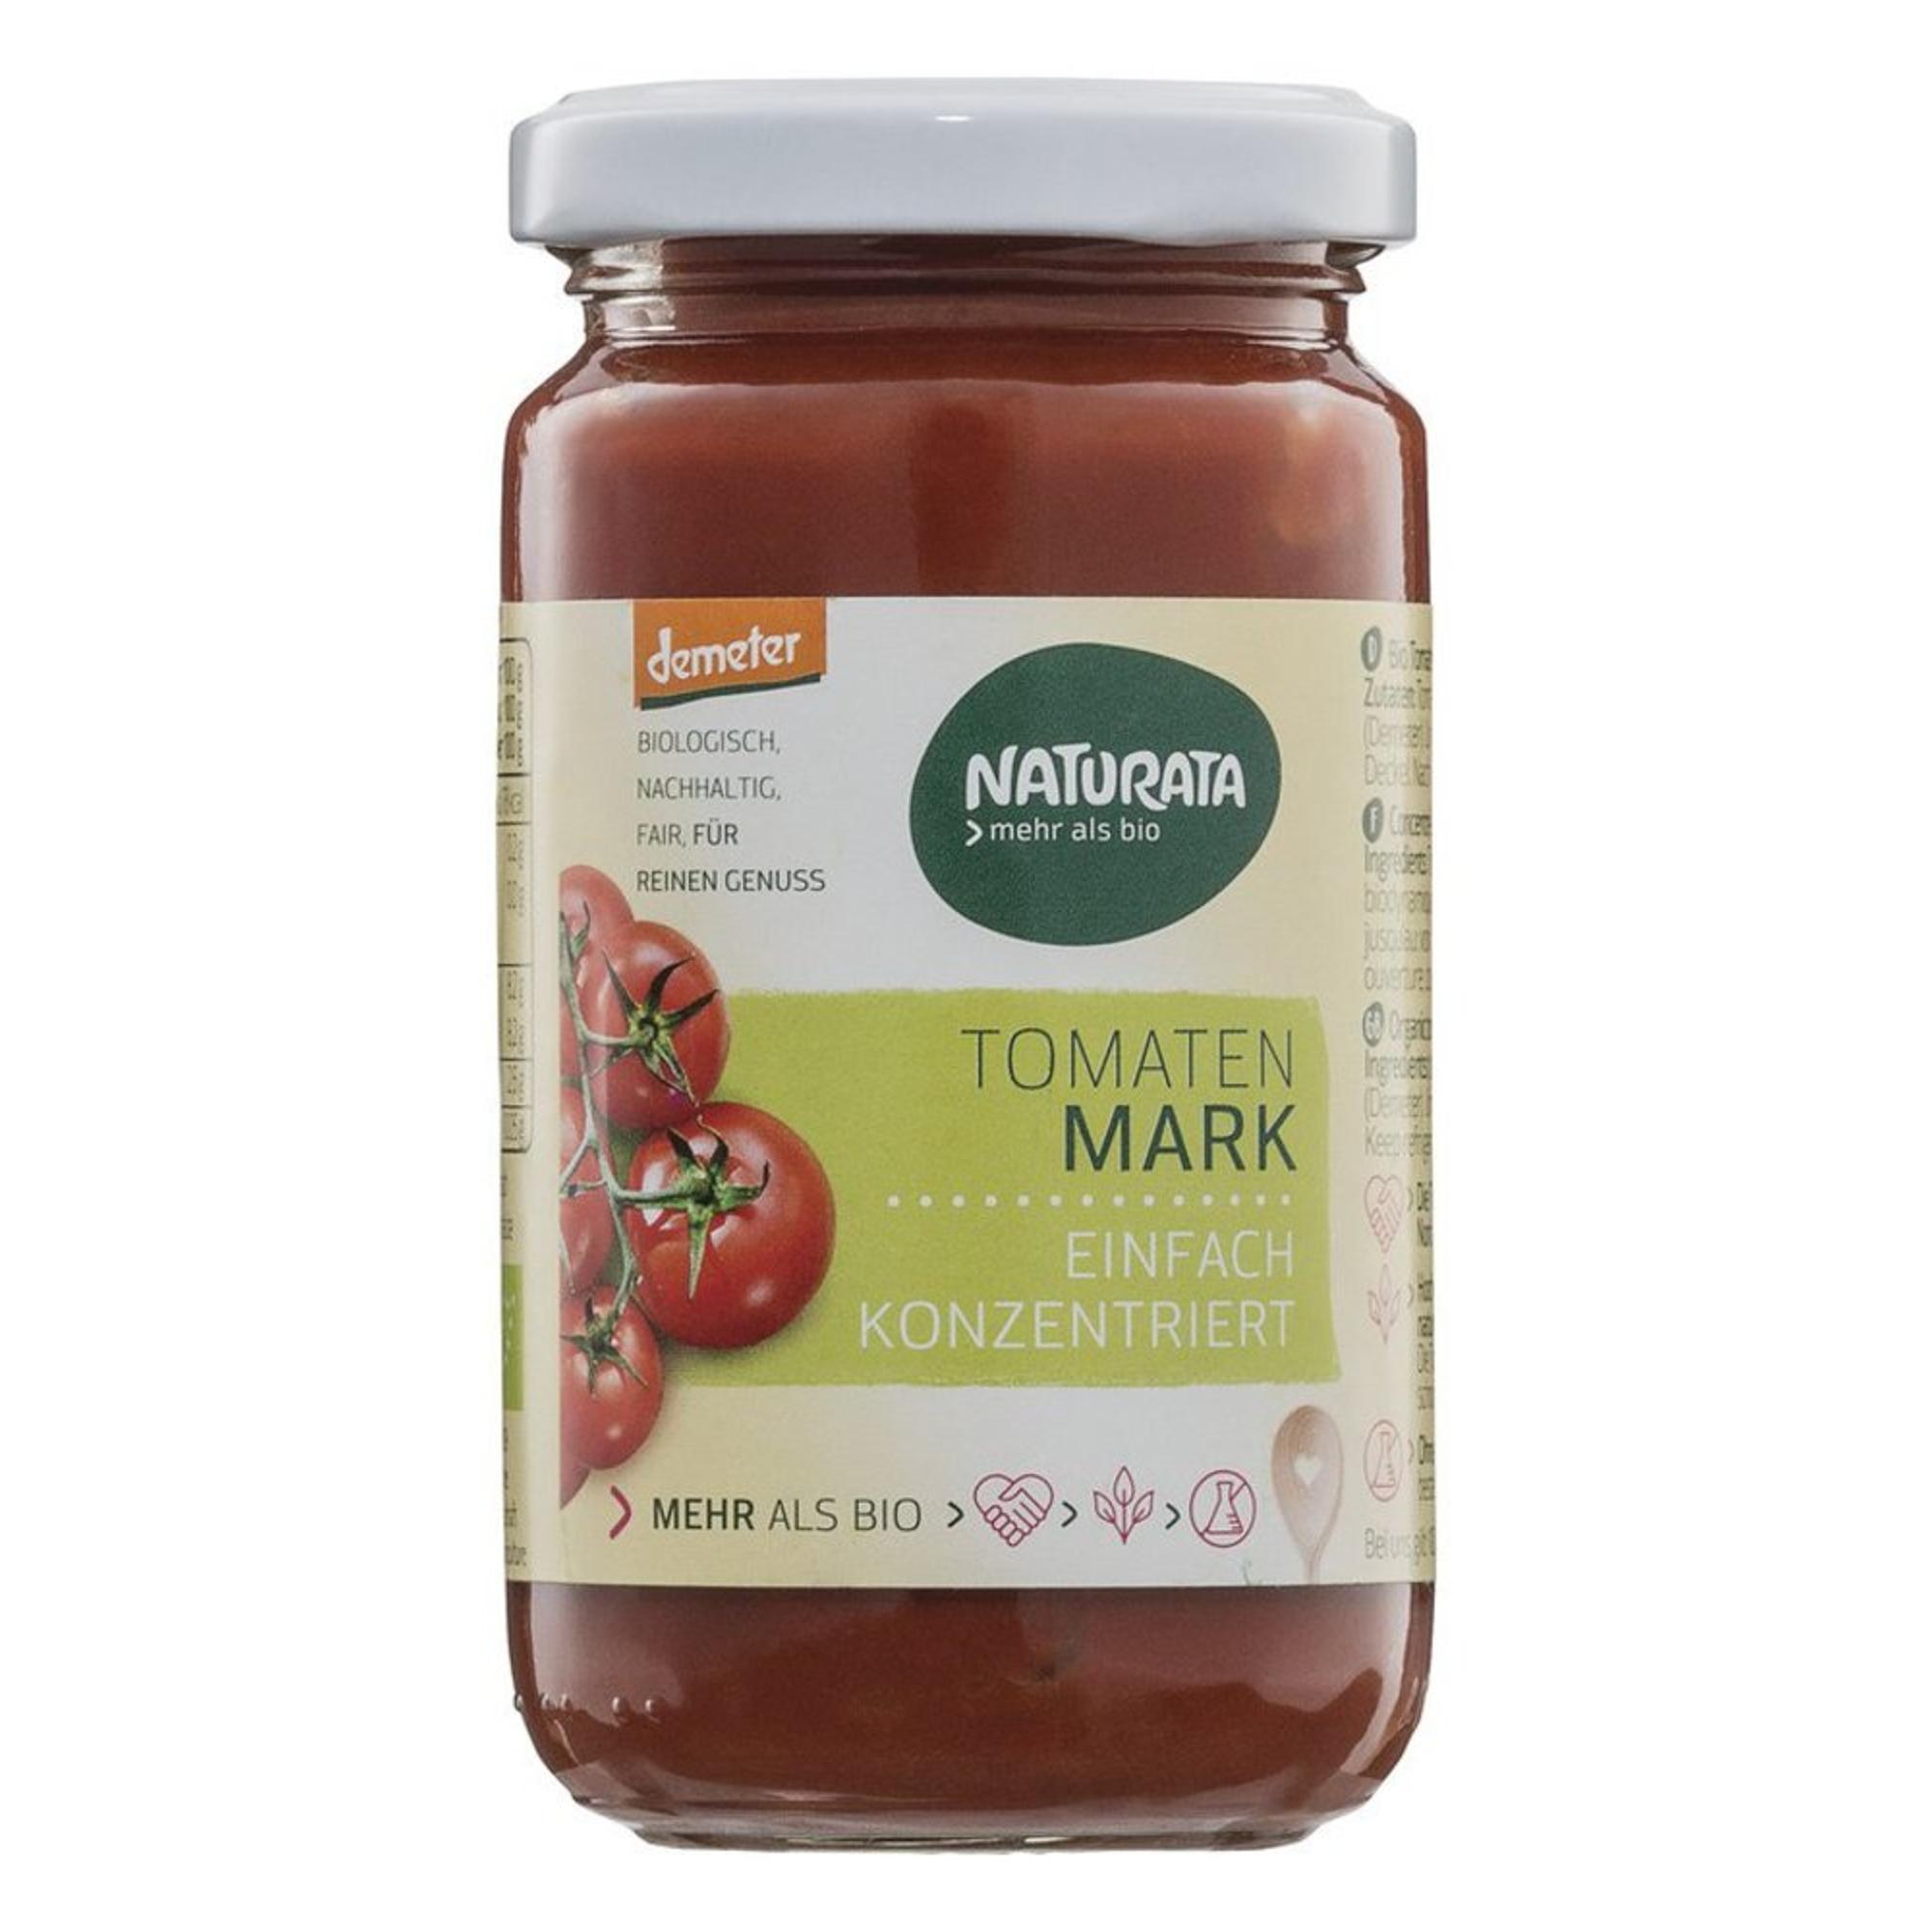 Tomatenmark, einfach konzentriert von Naturata.